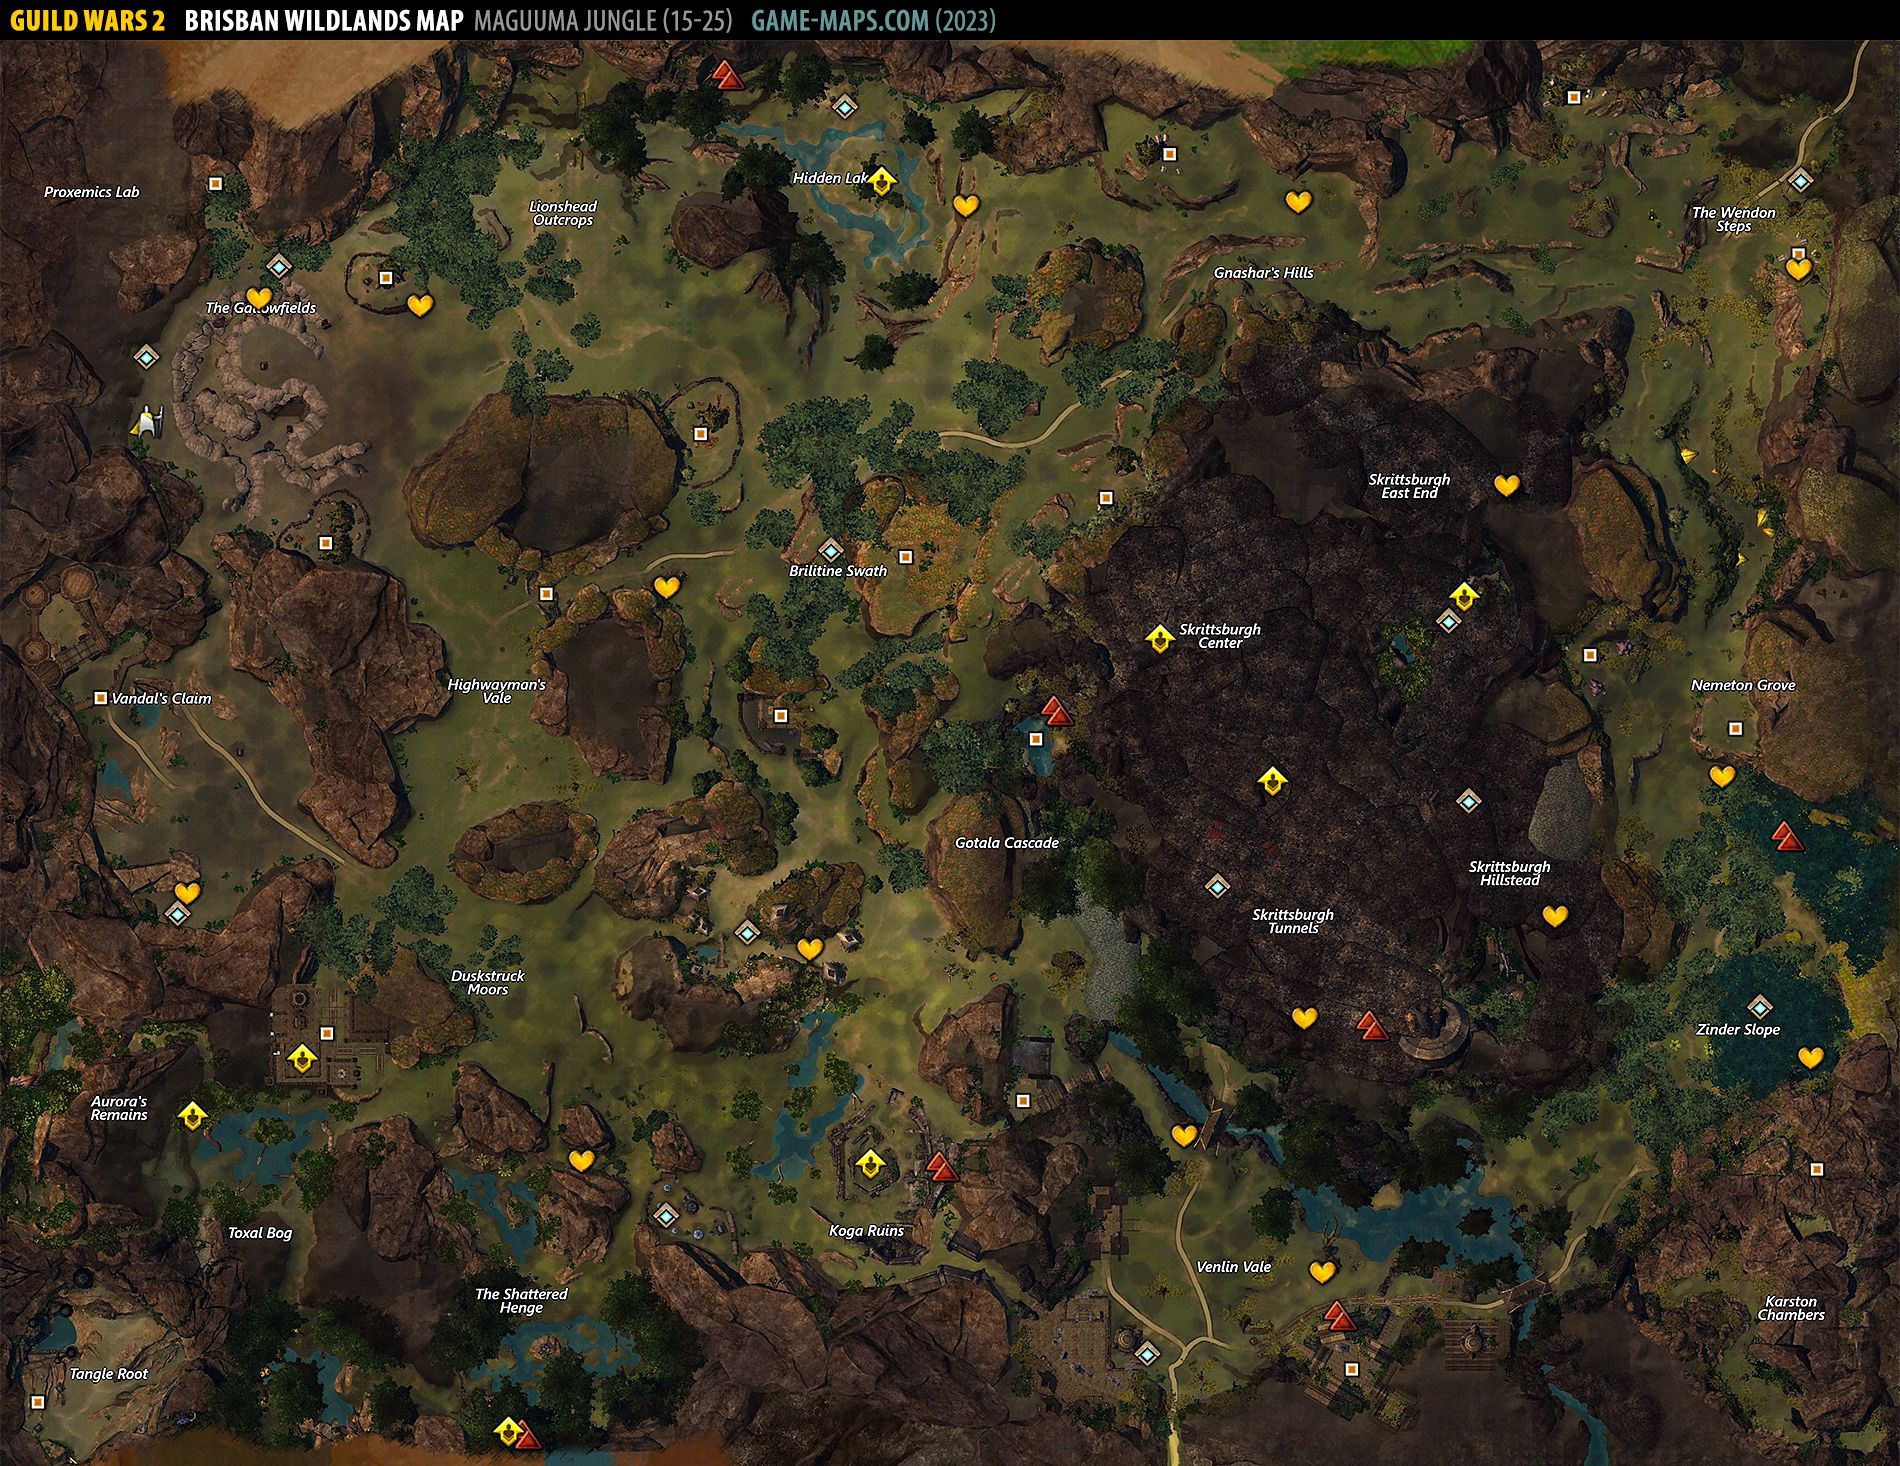 Brisban Wildlands Map - Guild Wars 2